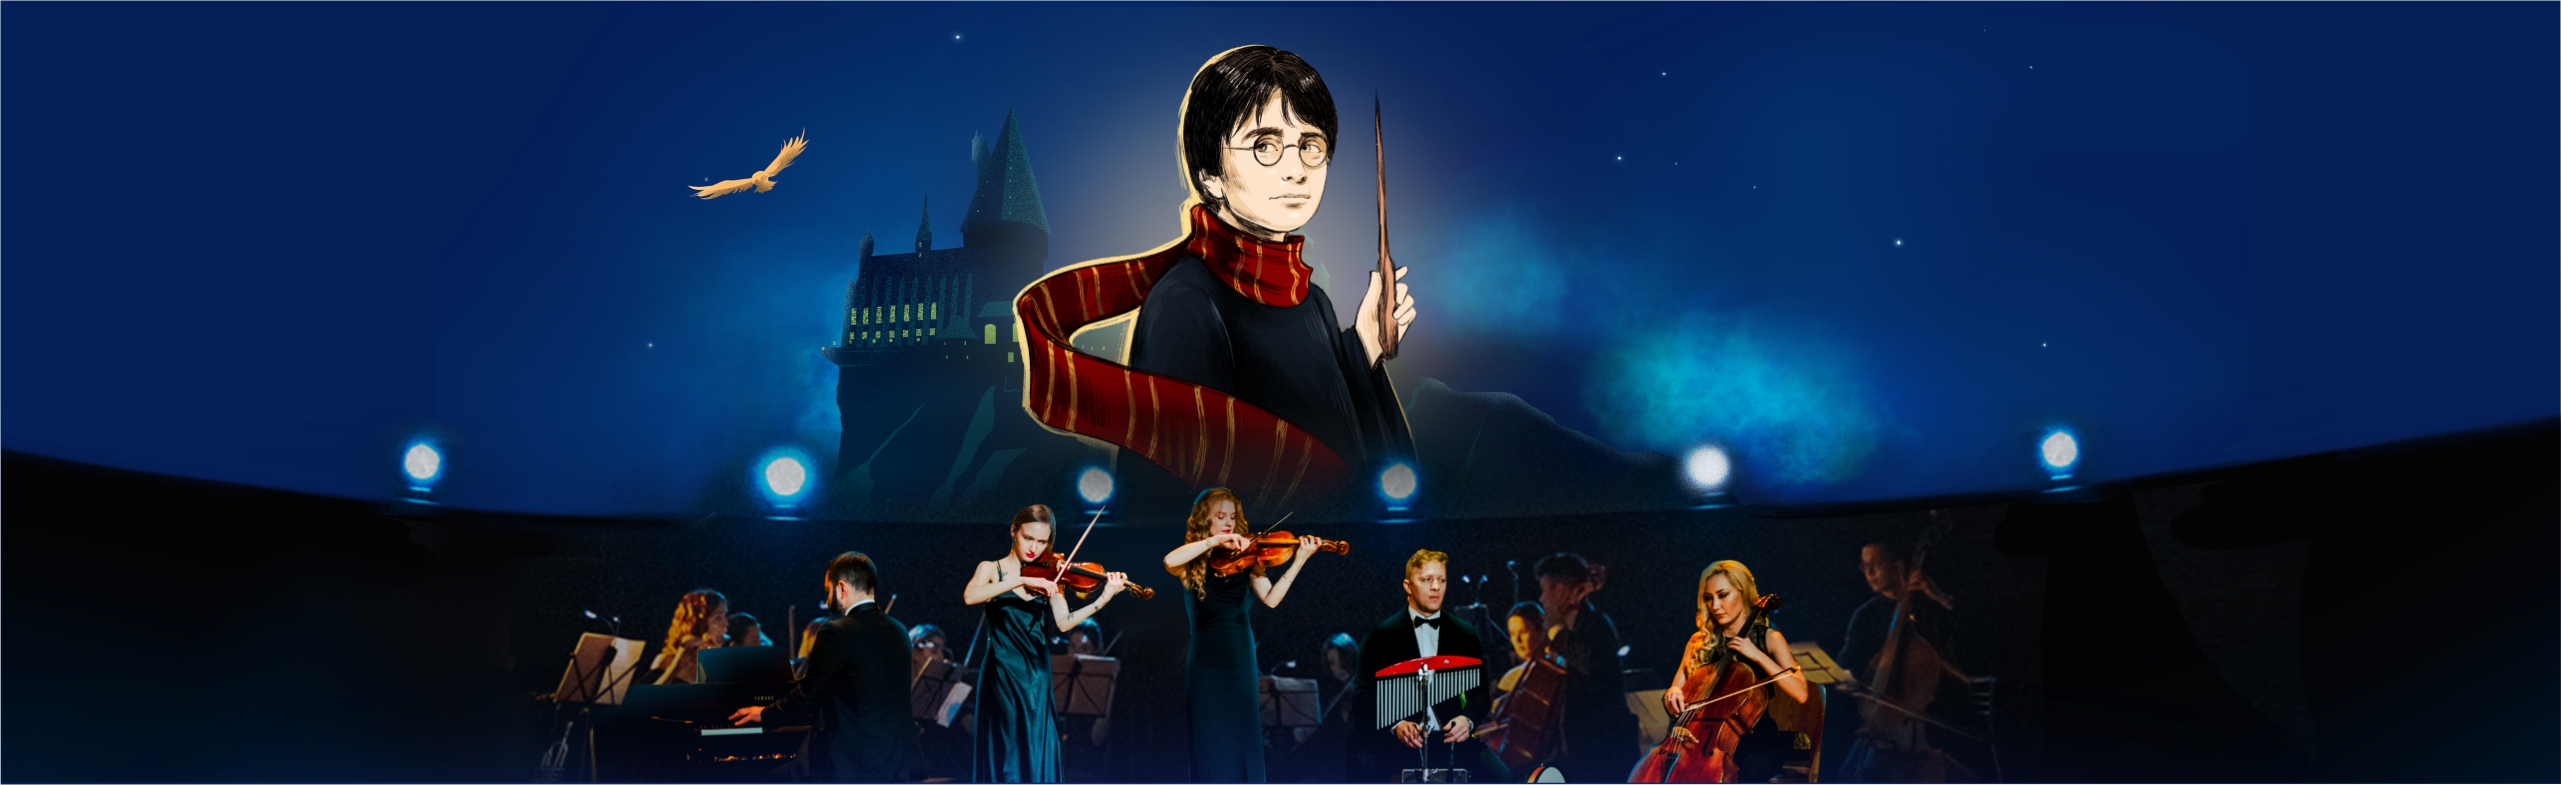 Фото афиши HighTime Orchestra. Музыка вселенной Гарри Поттера.